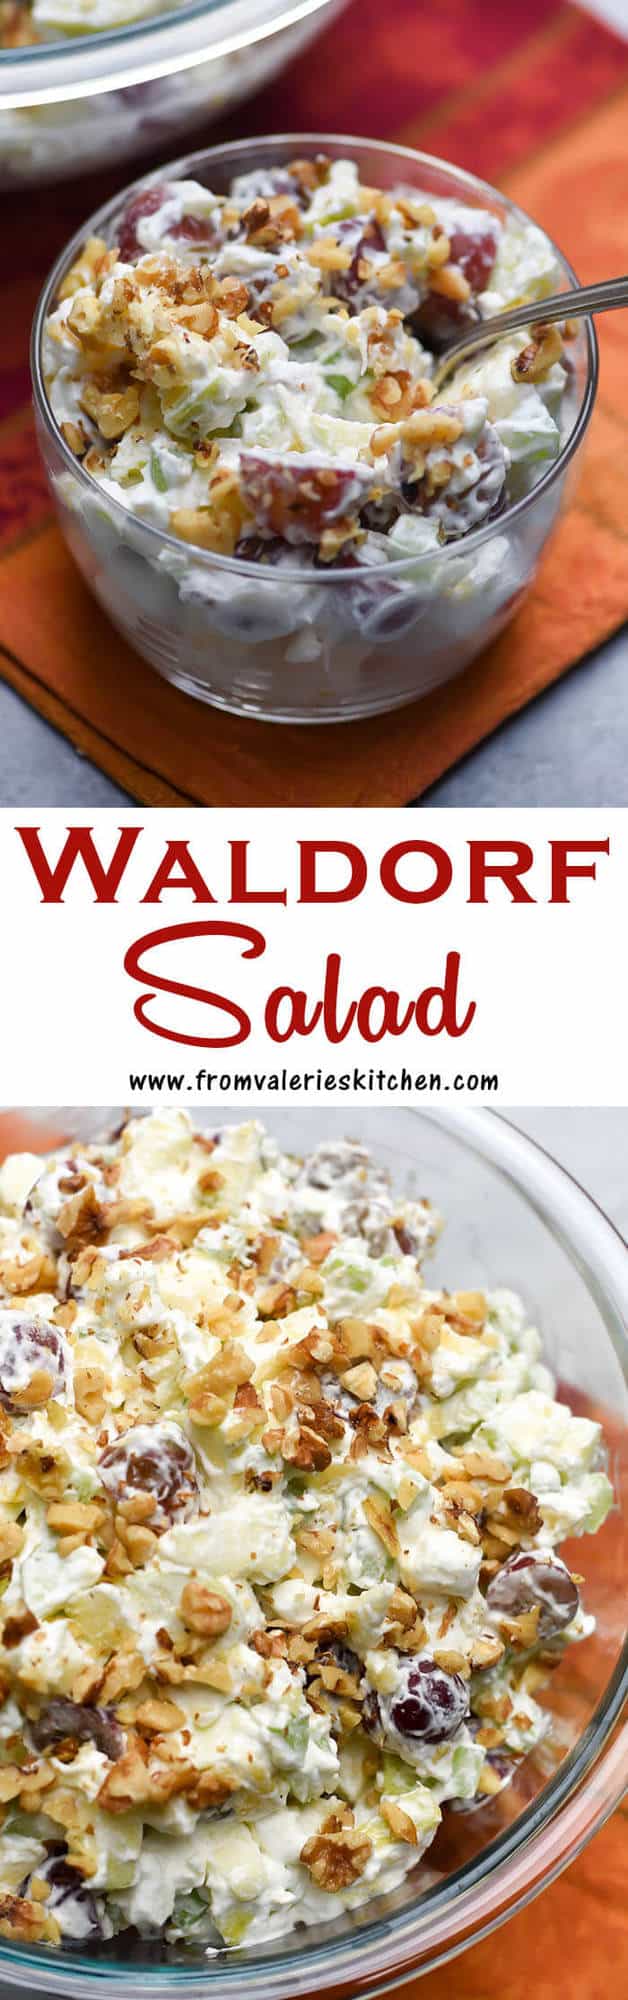 Un collage verticale di due immagini di insalata Waldorf con sovrapposizione di testo.